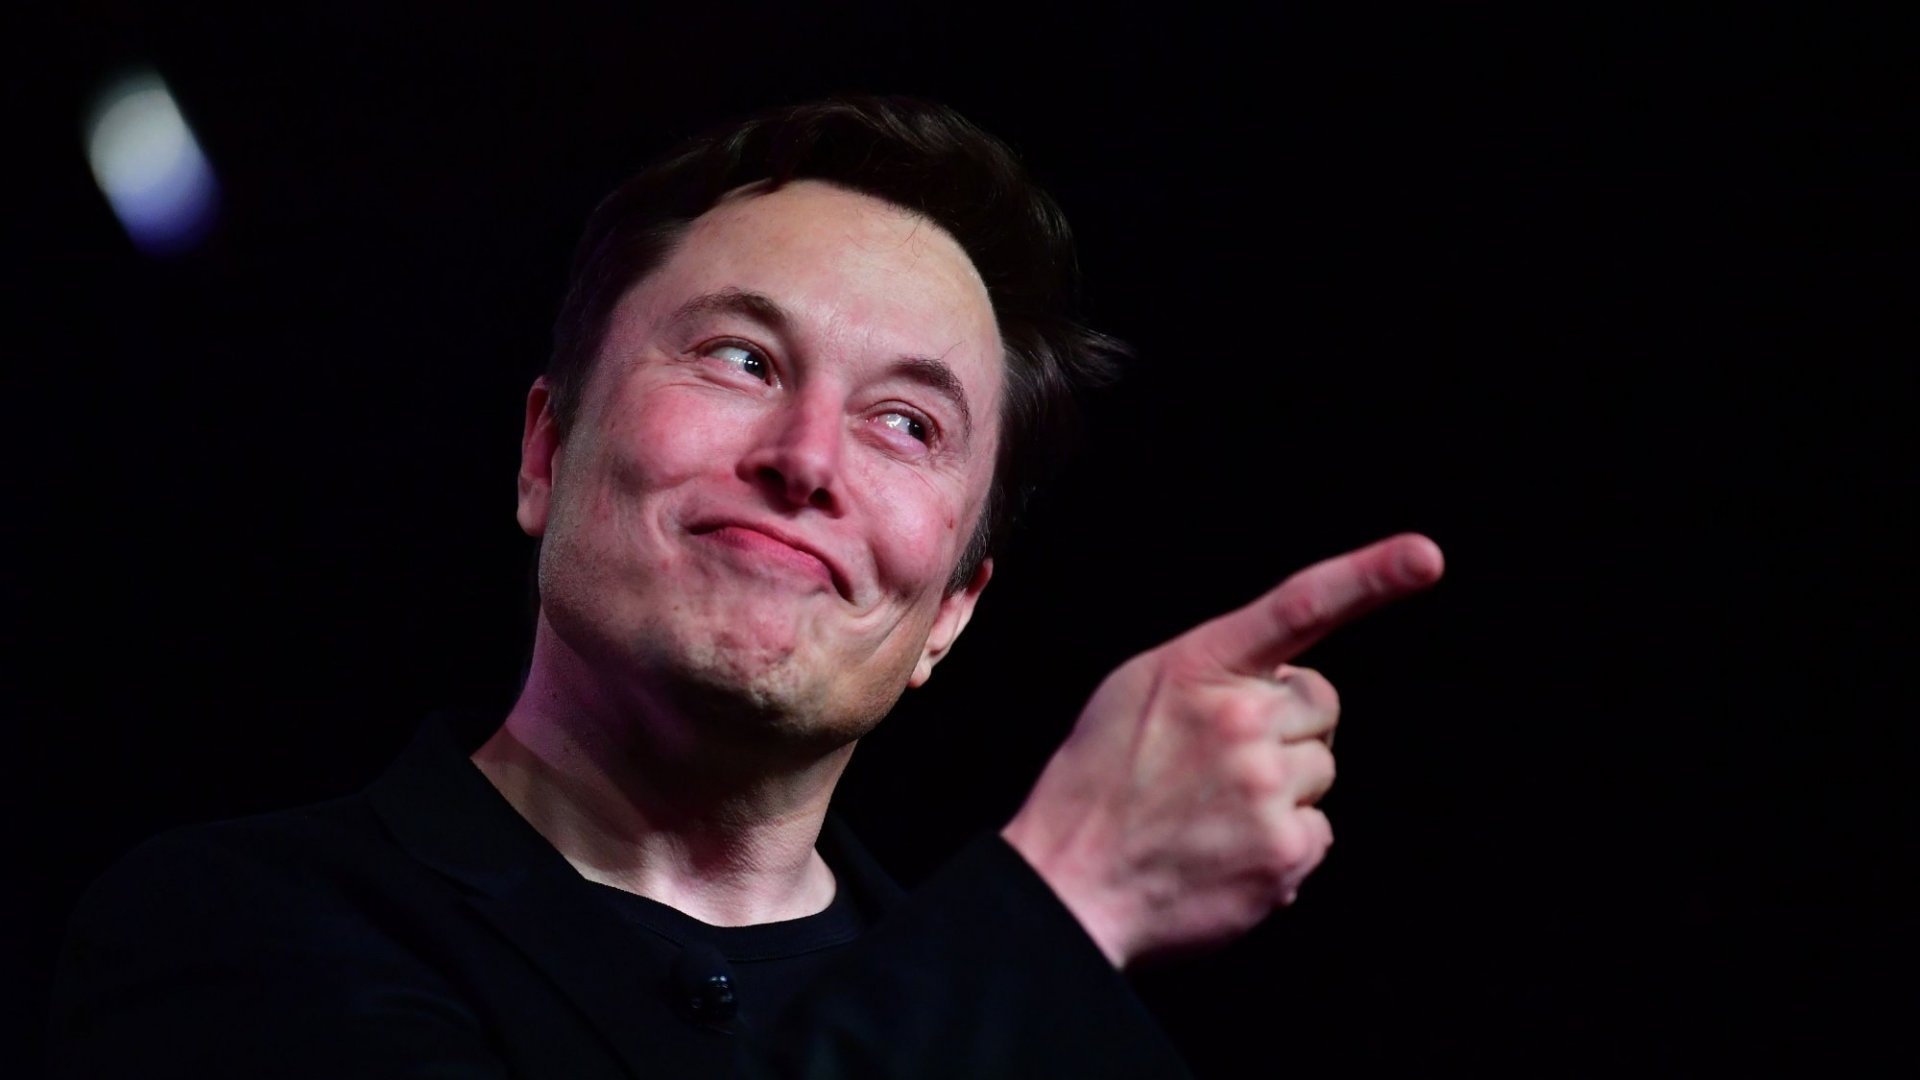  Elon Musk pune la bătaie un premiu de 100 de milioane de dolari pentru dezvoltarea celei mai bune tehnologii de captare a emisiilor de carbon din atmosferă.